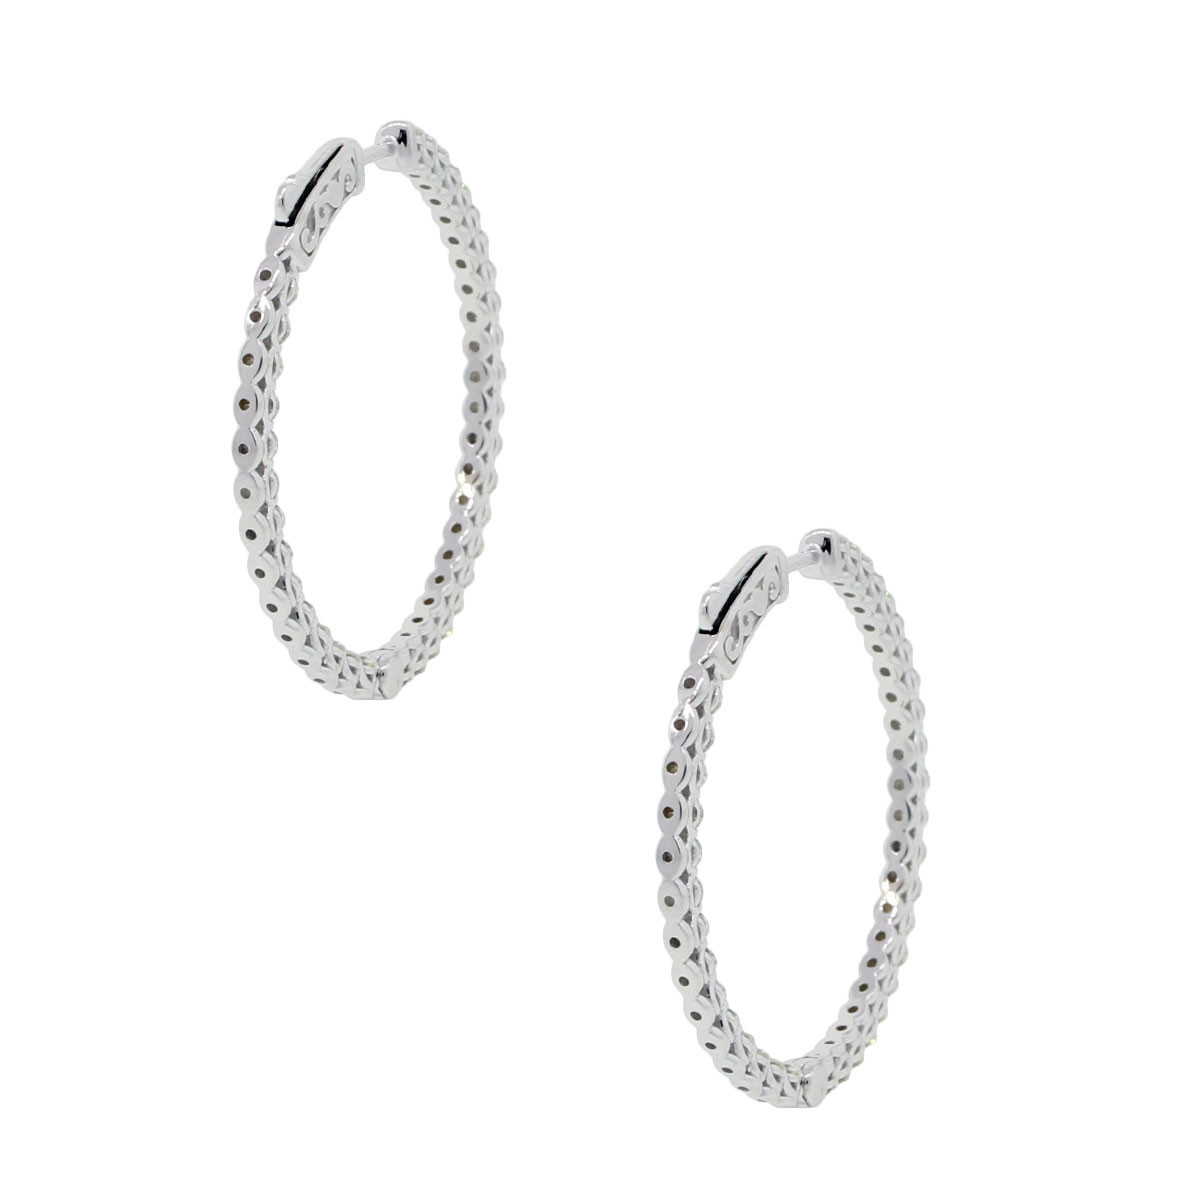 Inside Out Diamond Hoop Earrings
 14k White Gold 2 25ctw Diamond Inside Out Hoop Earrings